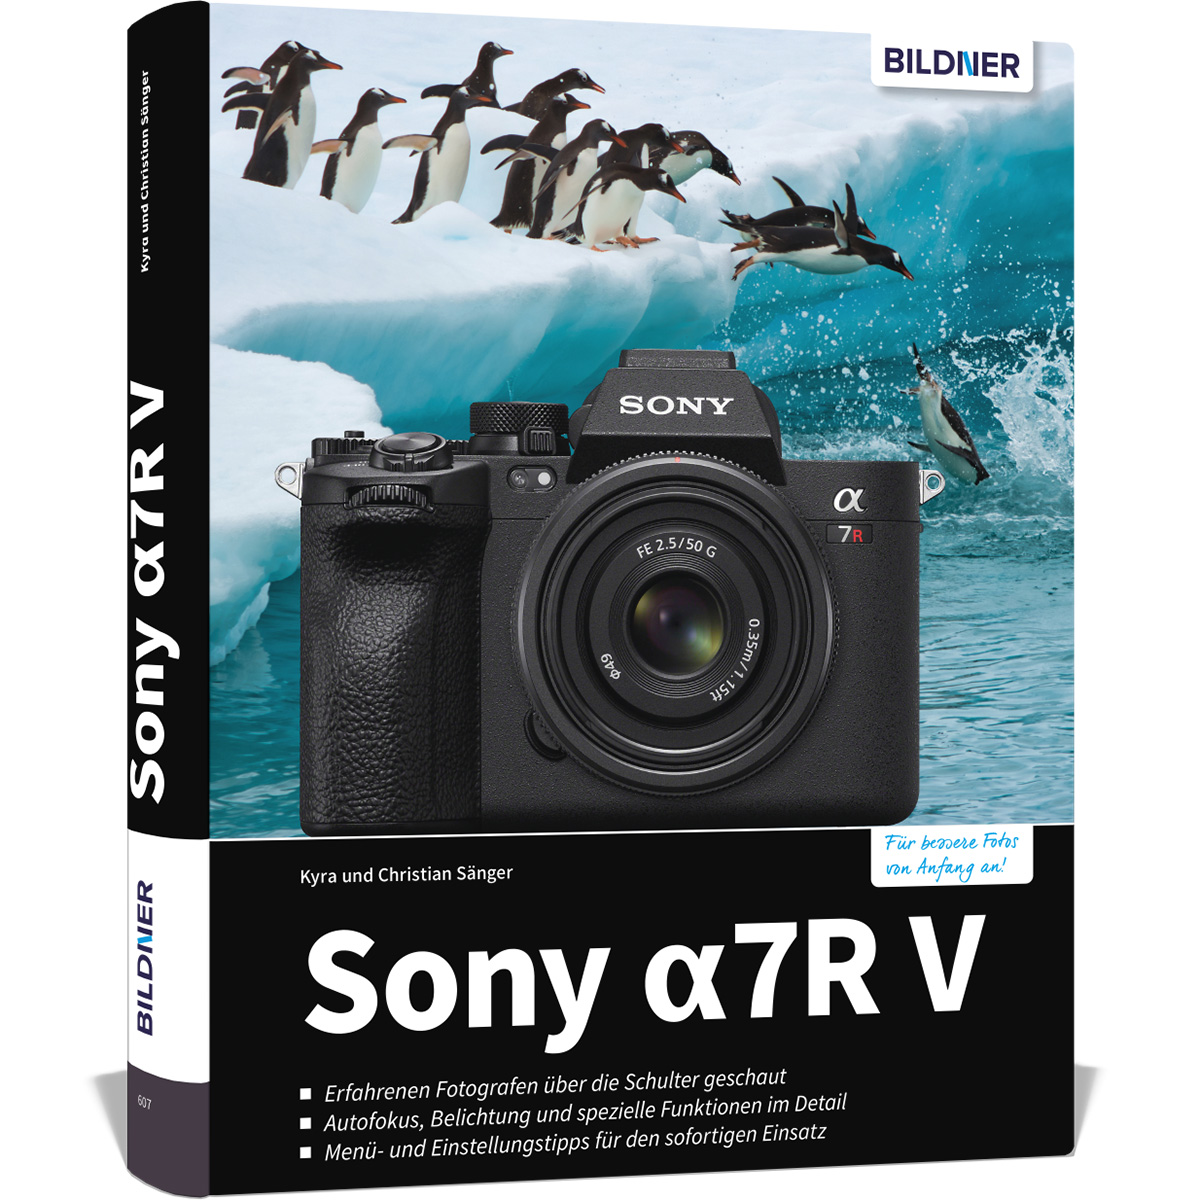 - Praxisbuch zu Ihrer umfangreiche alpha Sony 7R V Kamera Das